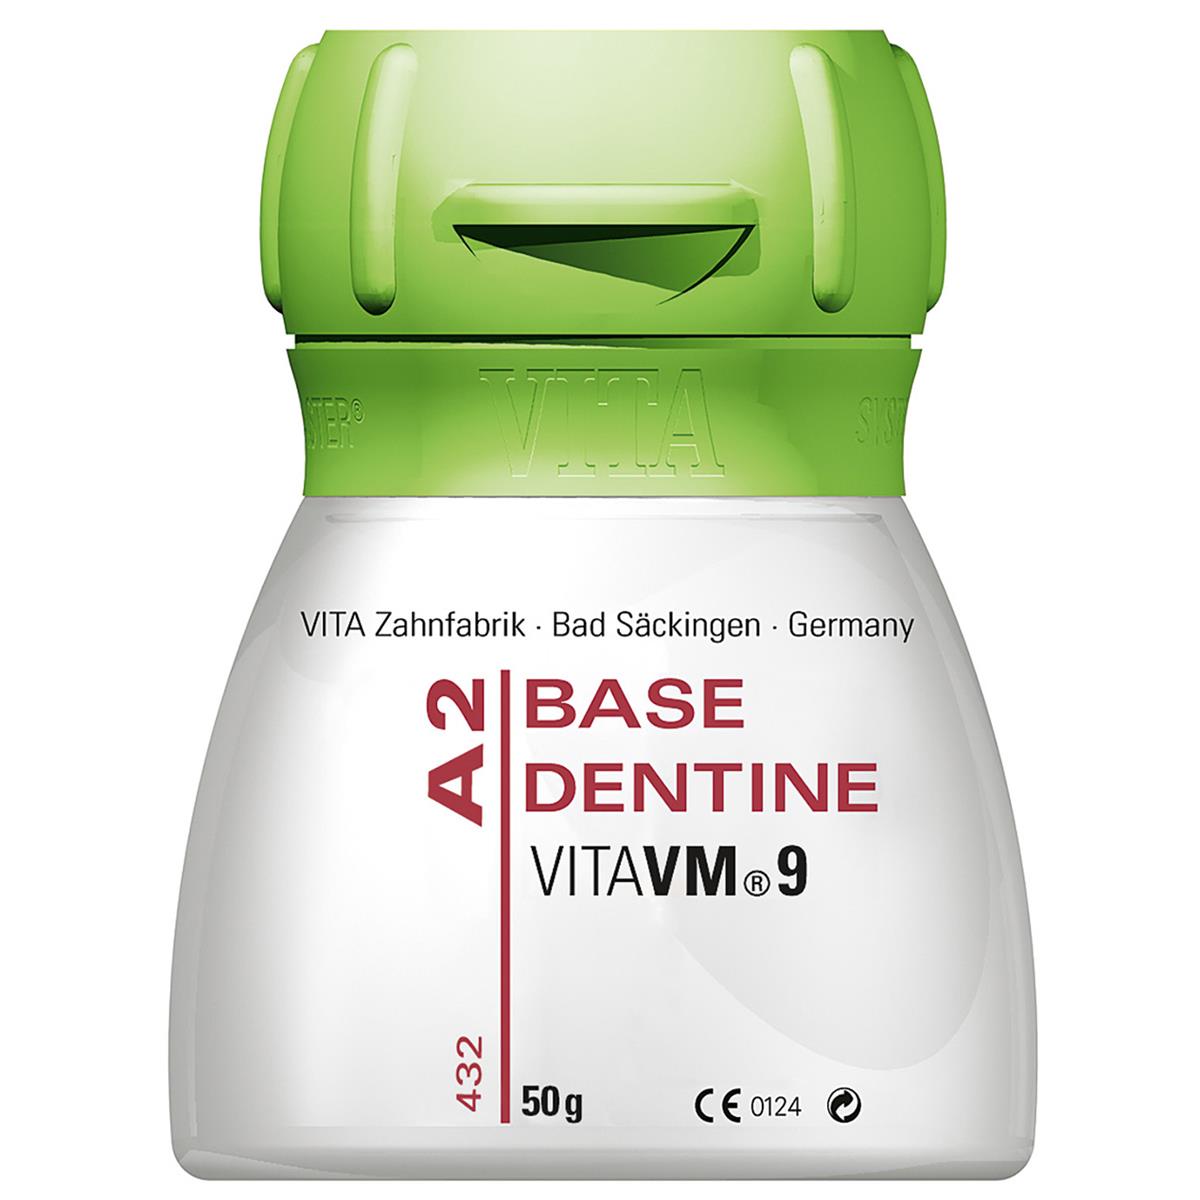 VM 9 Base Dentine A3 12g